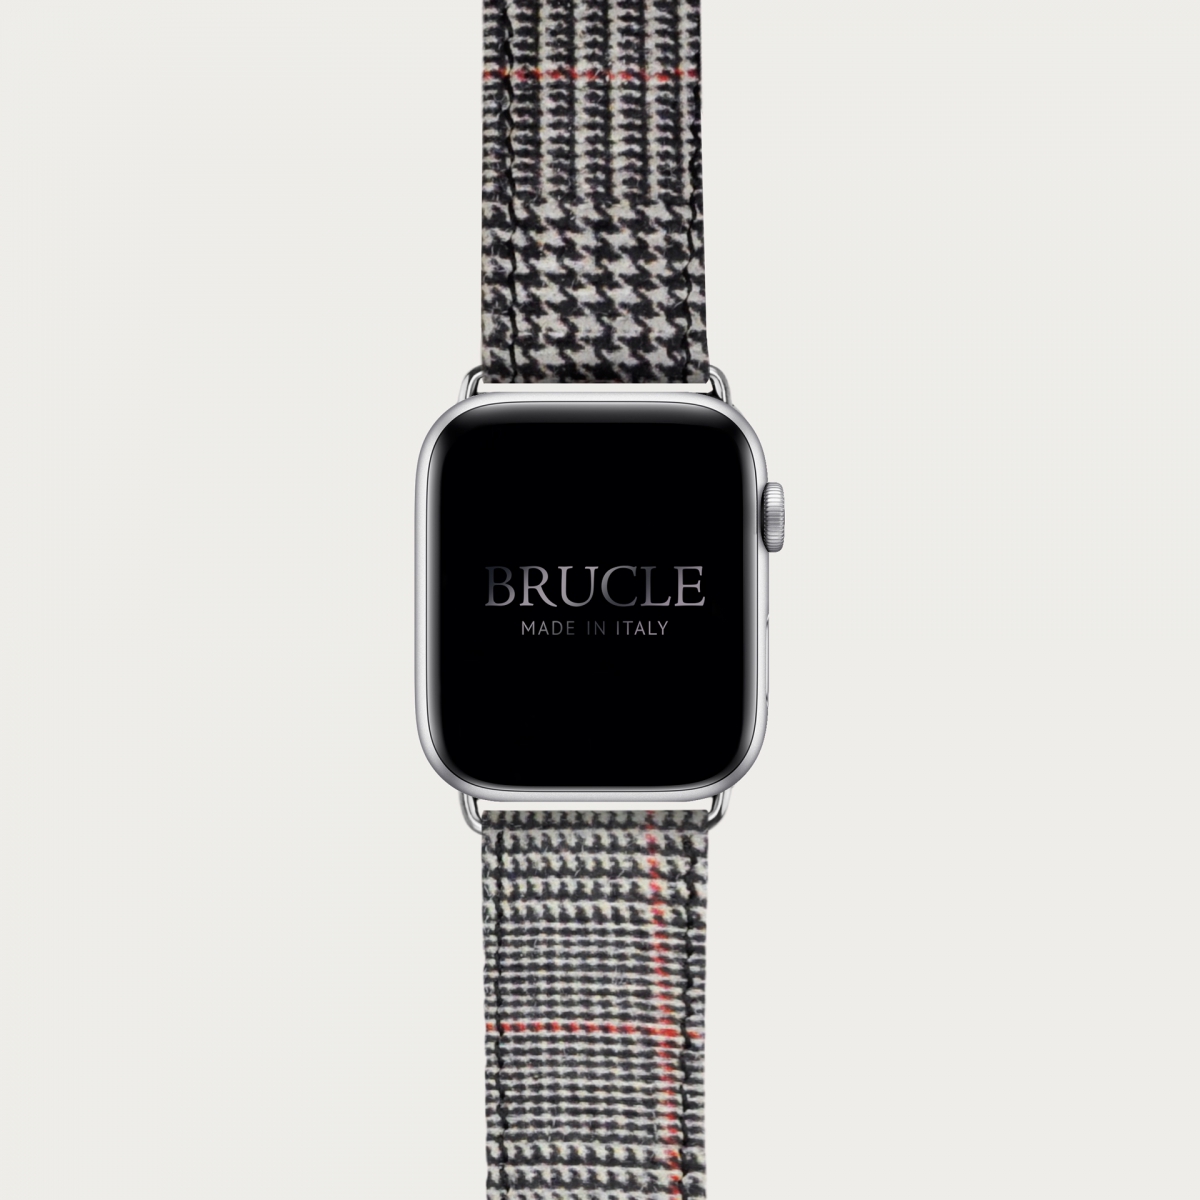 Brucle cinturino rosso in pelle stampa tartan per orologio, Compatibile con Apple Watch / Galaxy Samsung